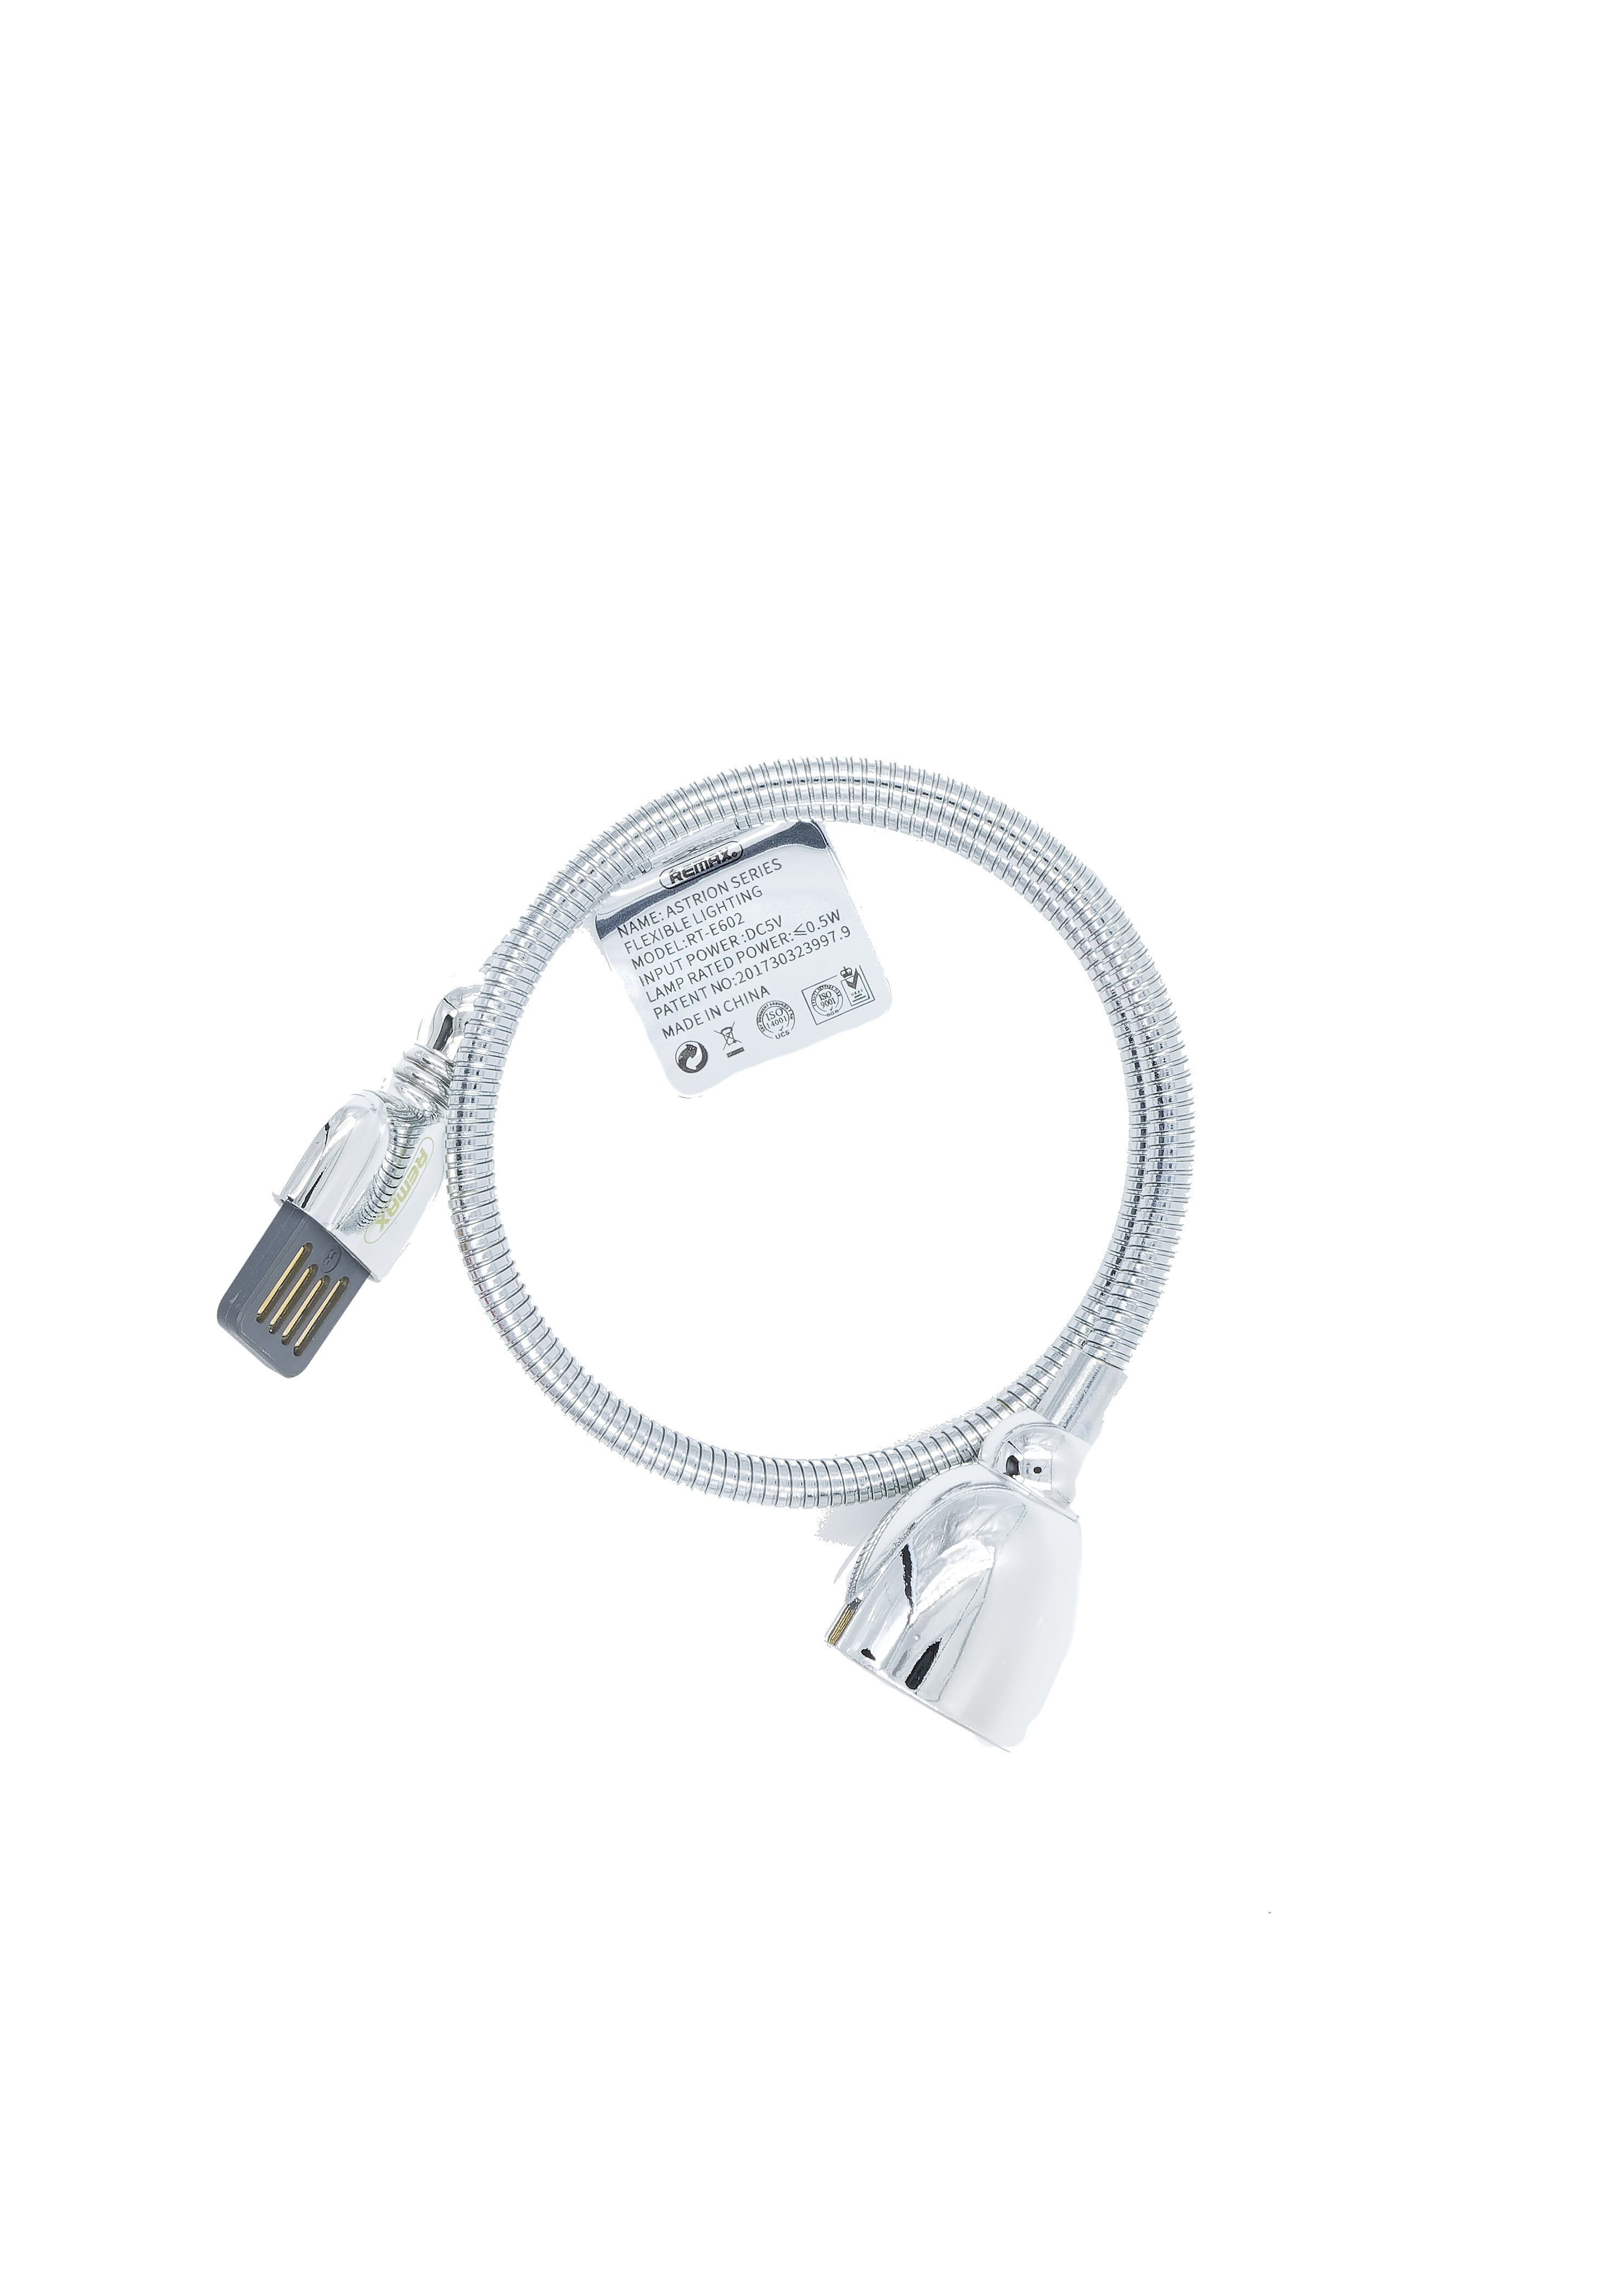 REMAX Flexible LED USB Light |  RT-E602